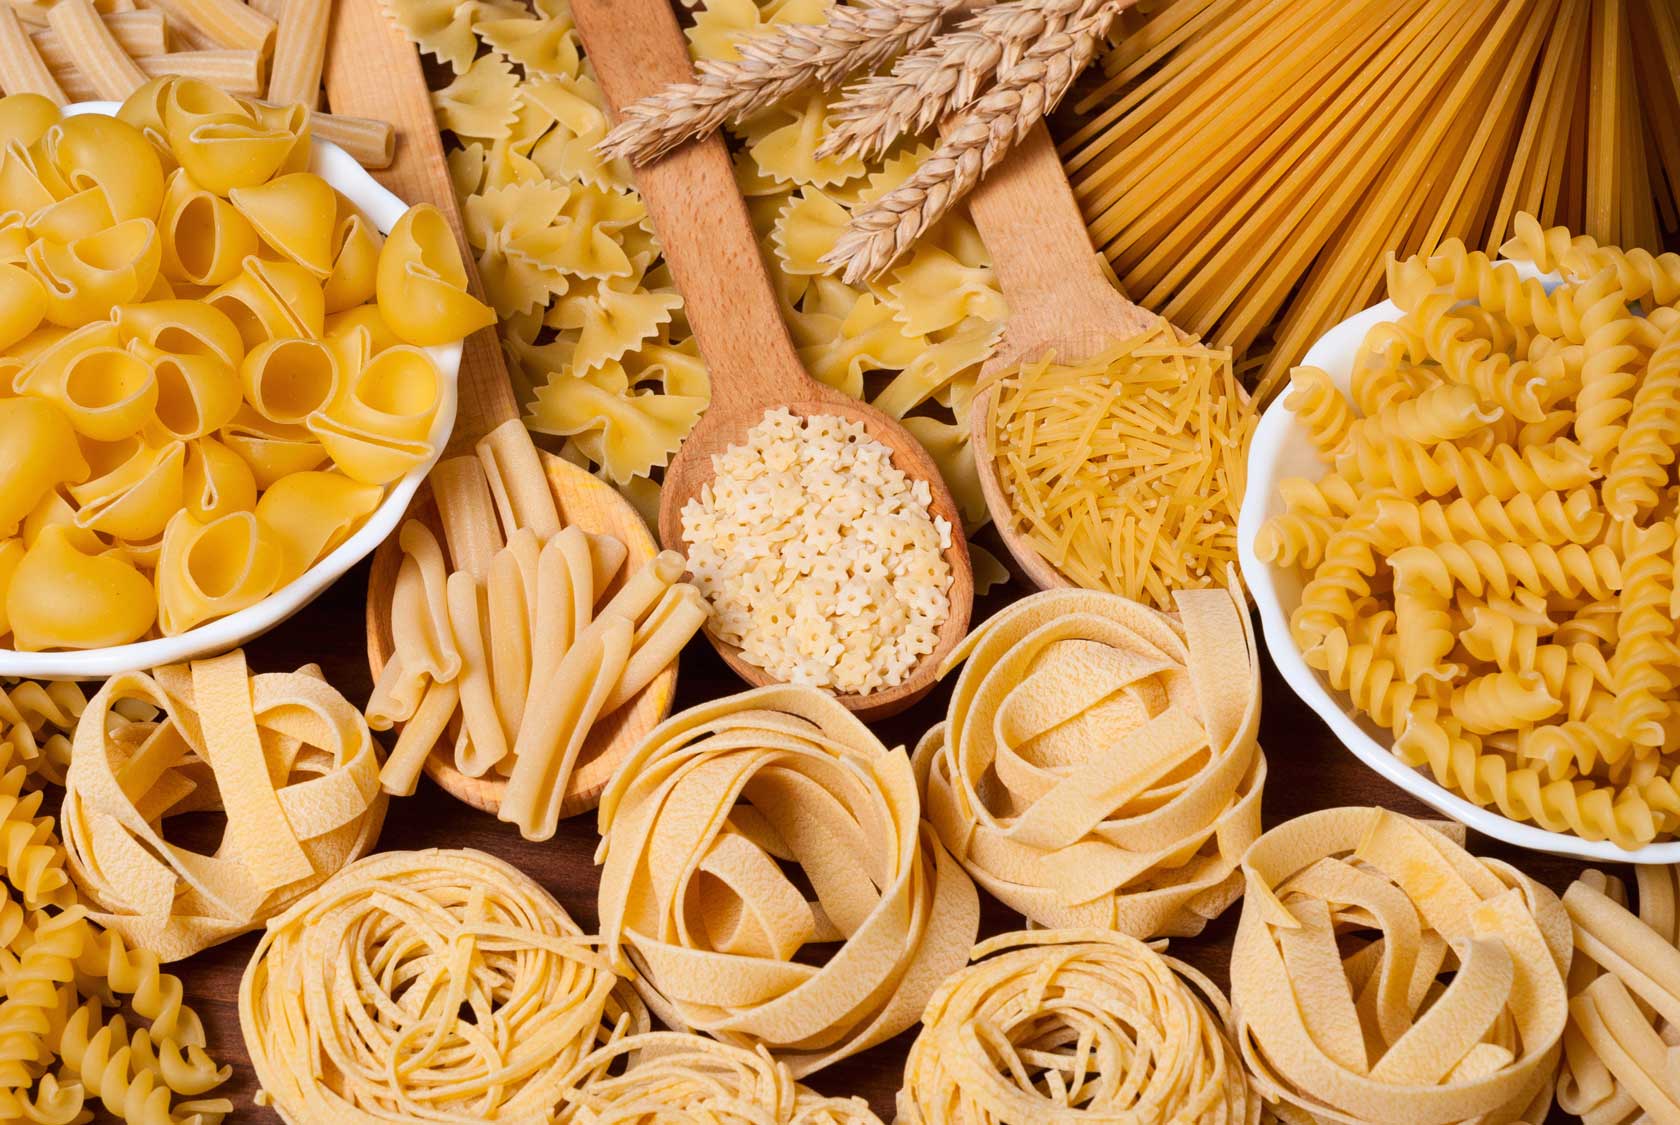 Various raw pastas